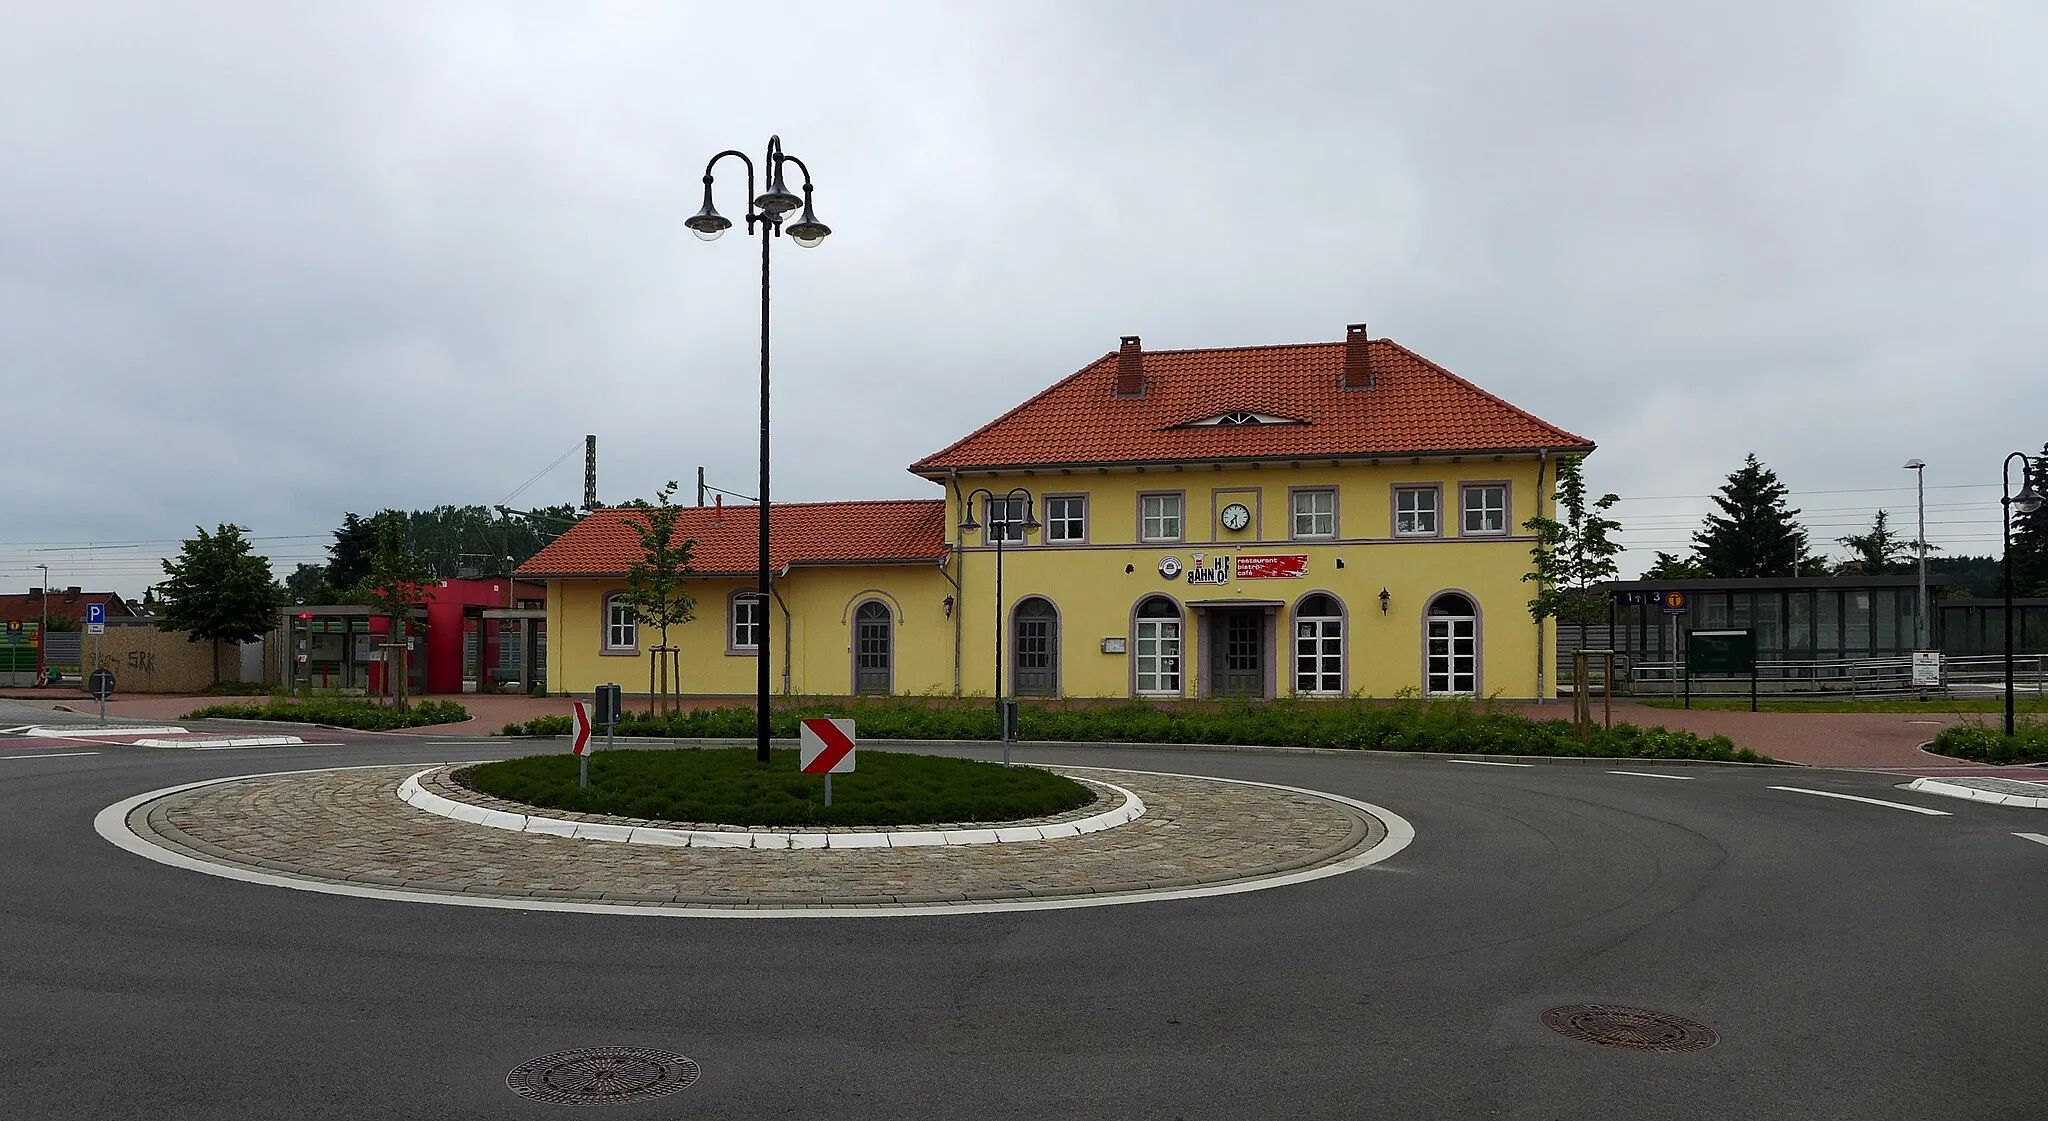 Photo showing: Bahnhof in Bienenbüttel, Haltepunkt des Metronom an der Hochgeschwindigkeitseisenbahnstrecke Hamburg–Uelzen–Hannover. Kreisverkehr vor dem Bahnhof.